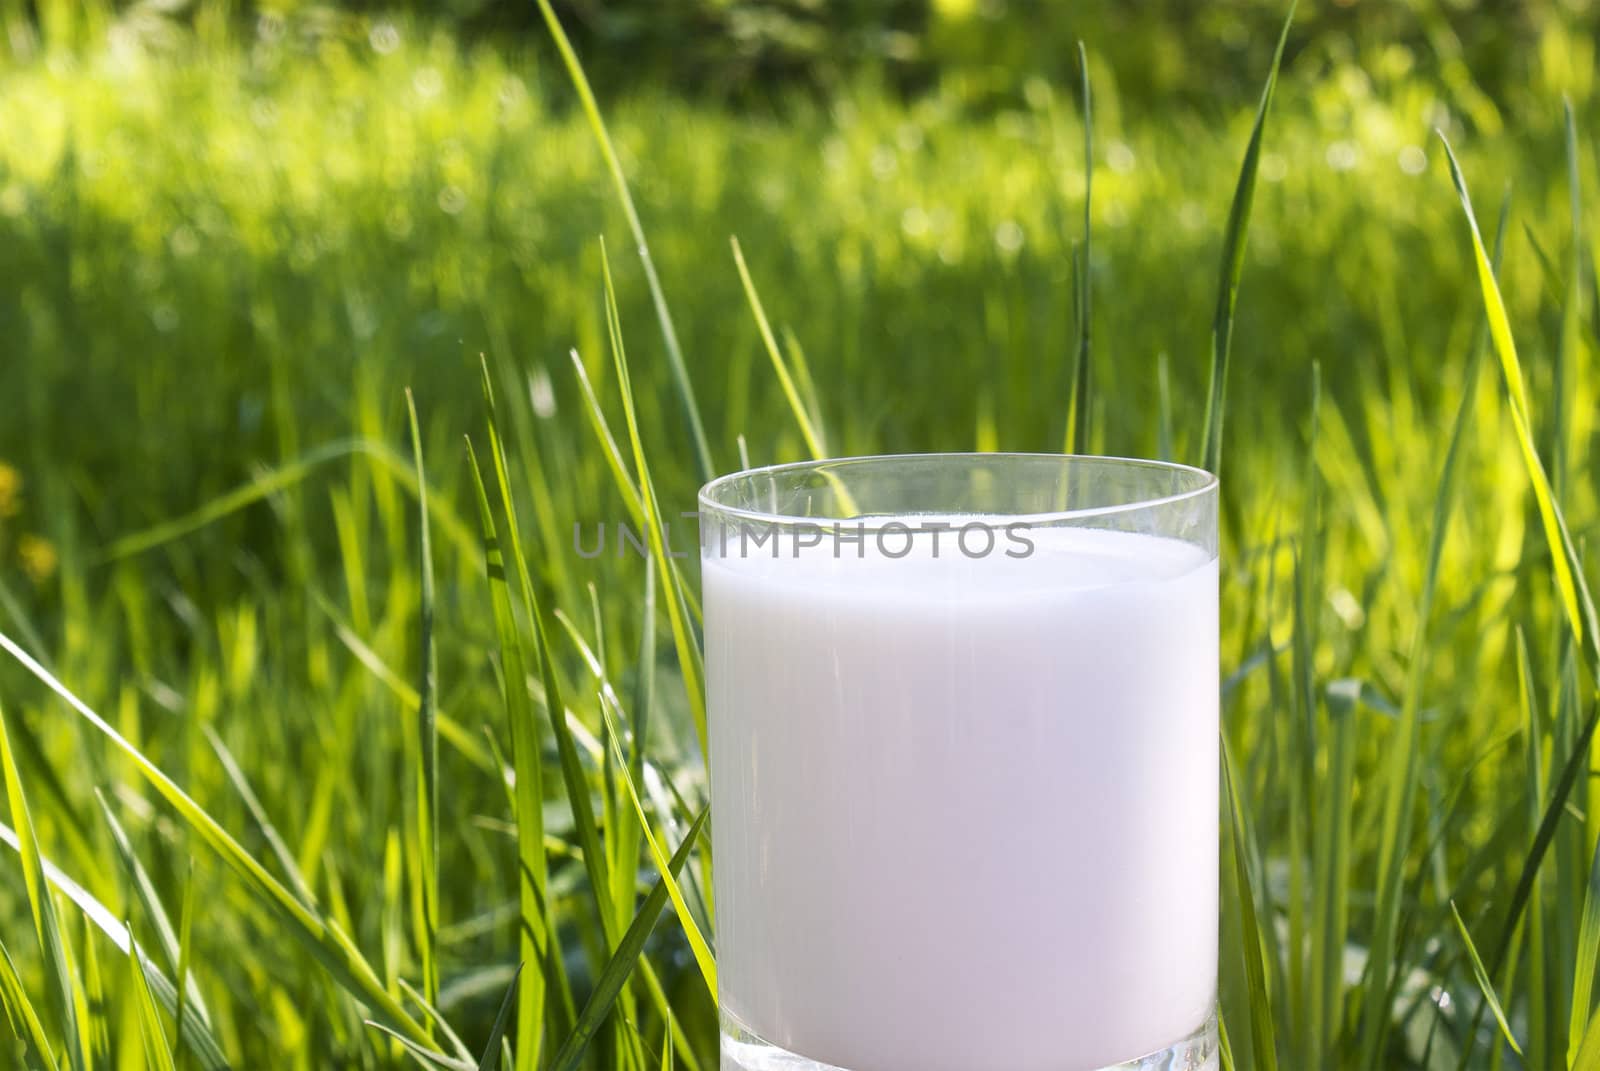 Fresh milk over green grass background